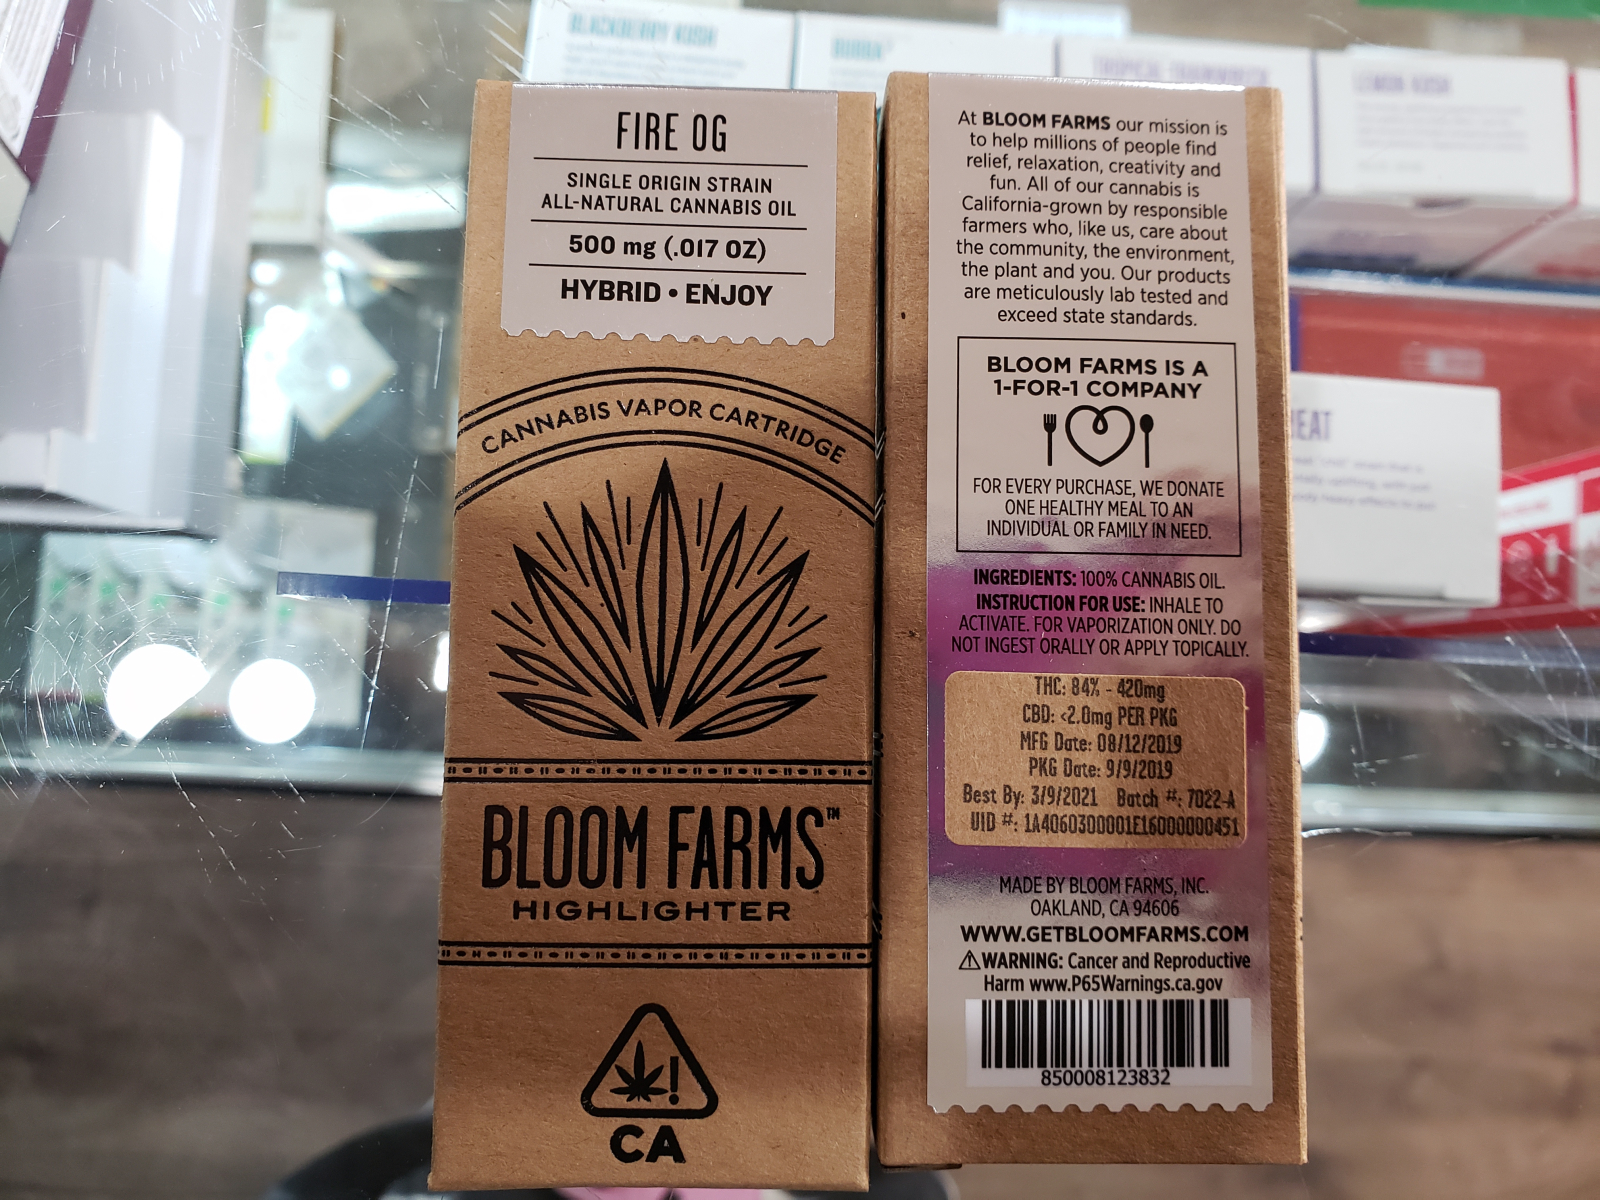 Bloom farms Fire OG hybrid cartridge half gram